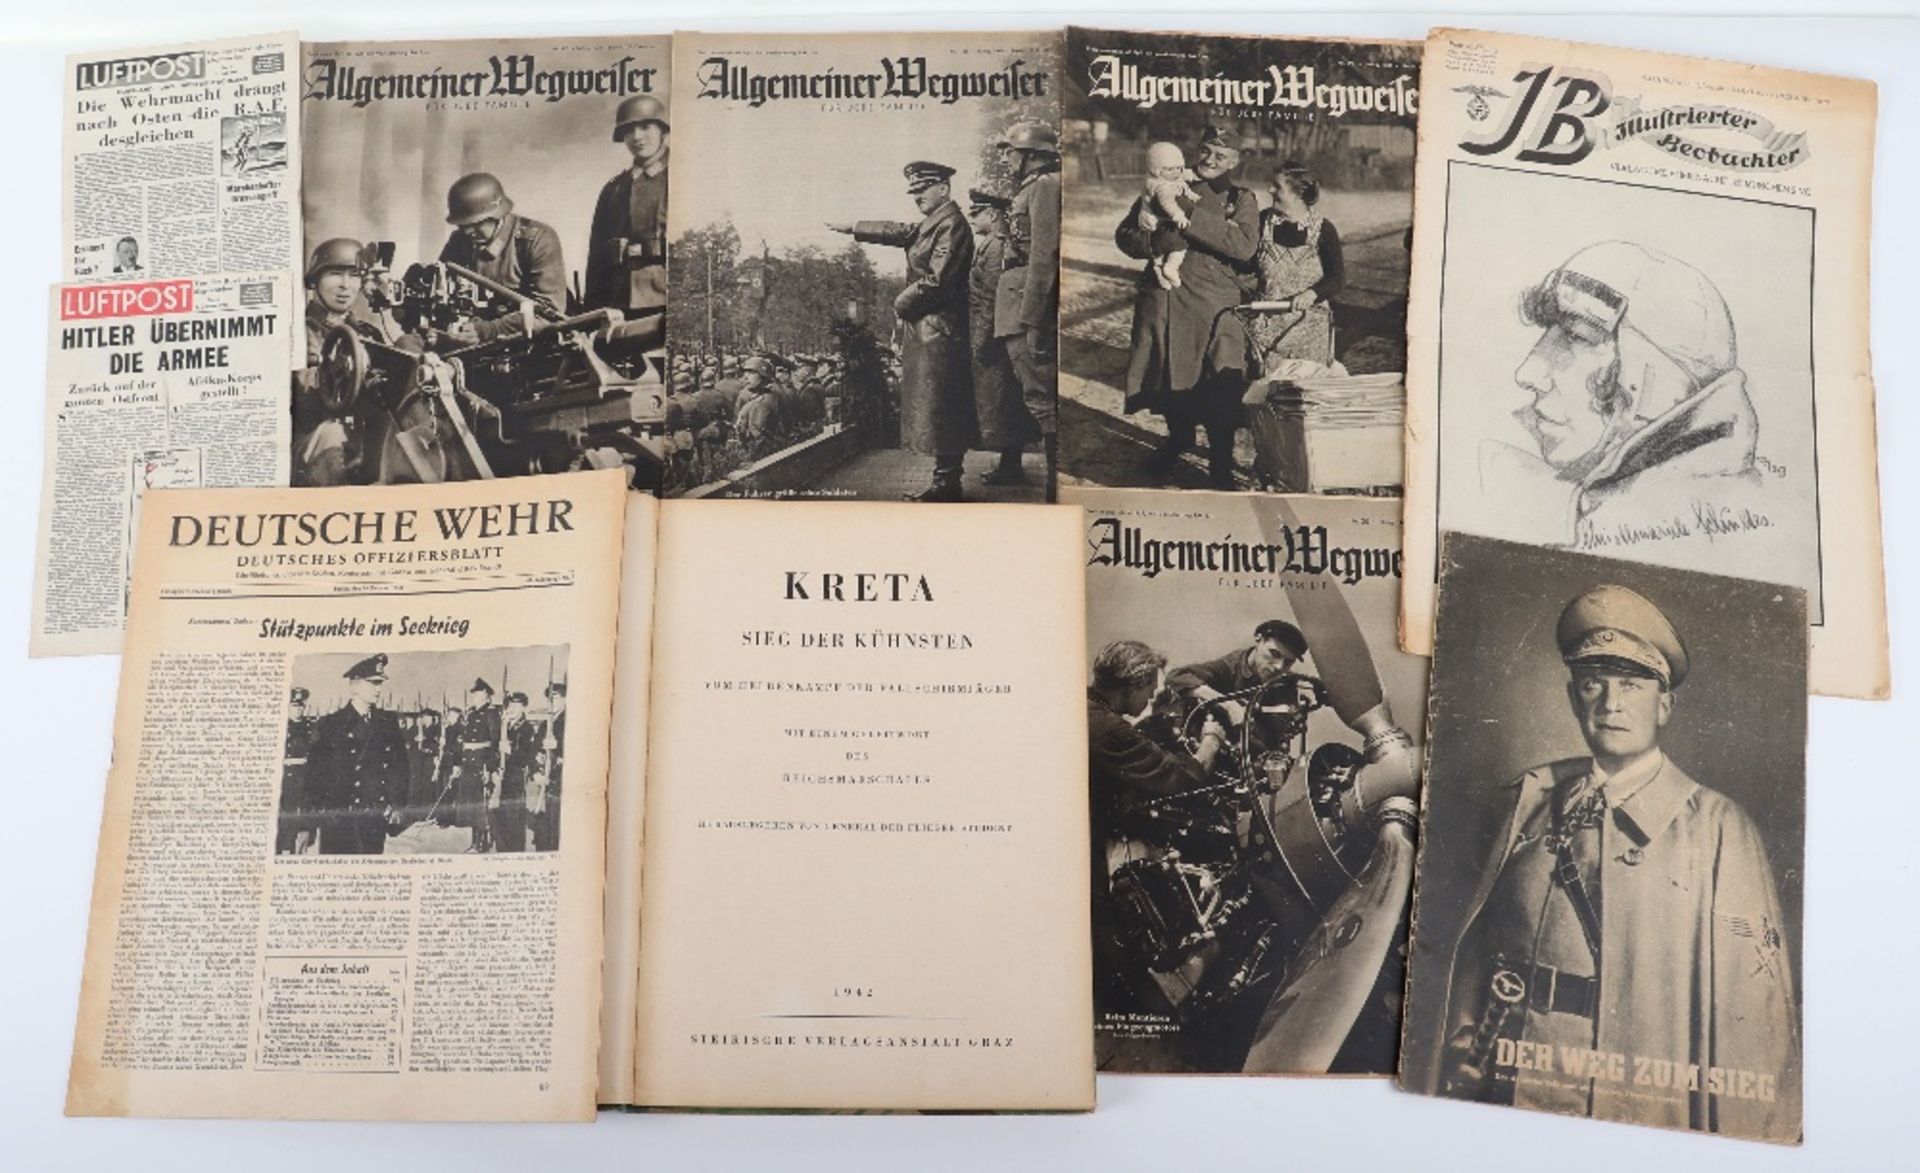 Third Reich Book Kreta Sieg der Kuhnsten von Heldenkampf den Fallschirmjager